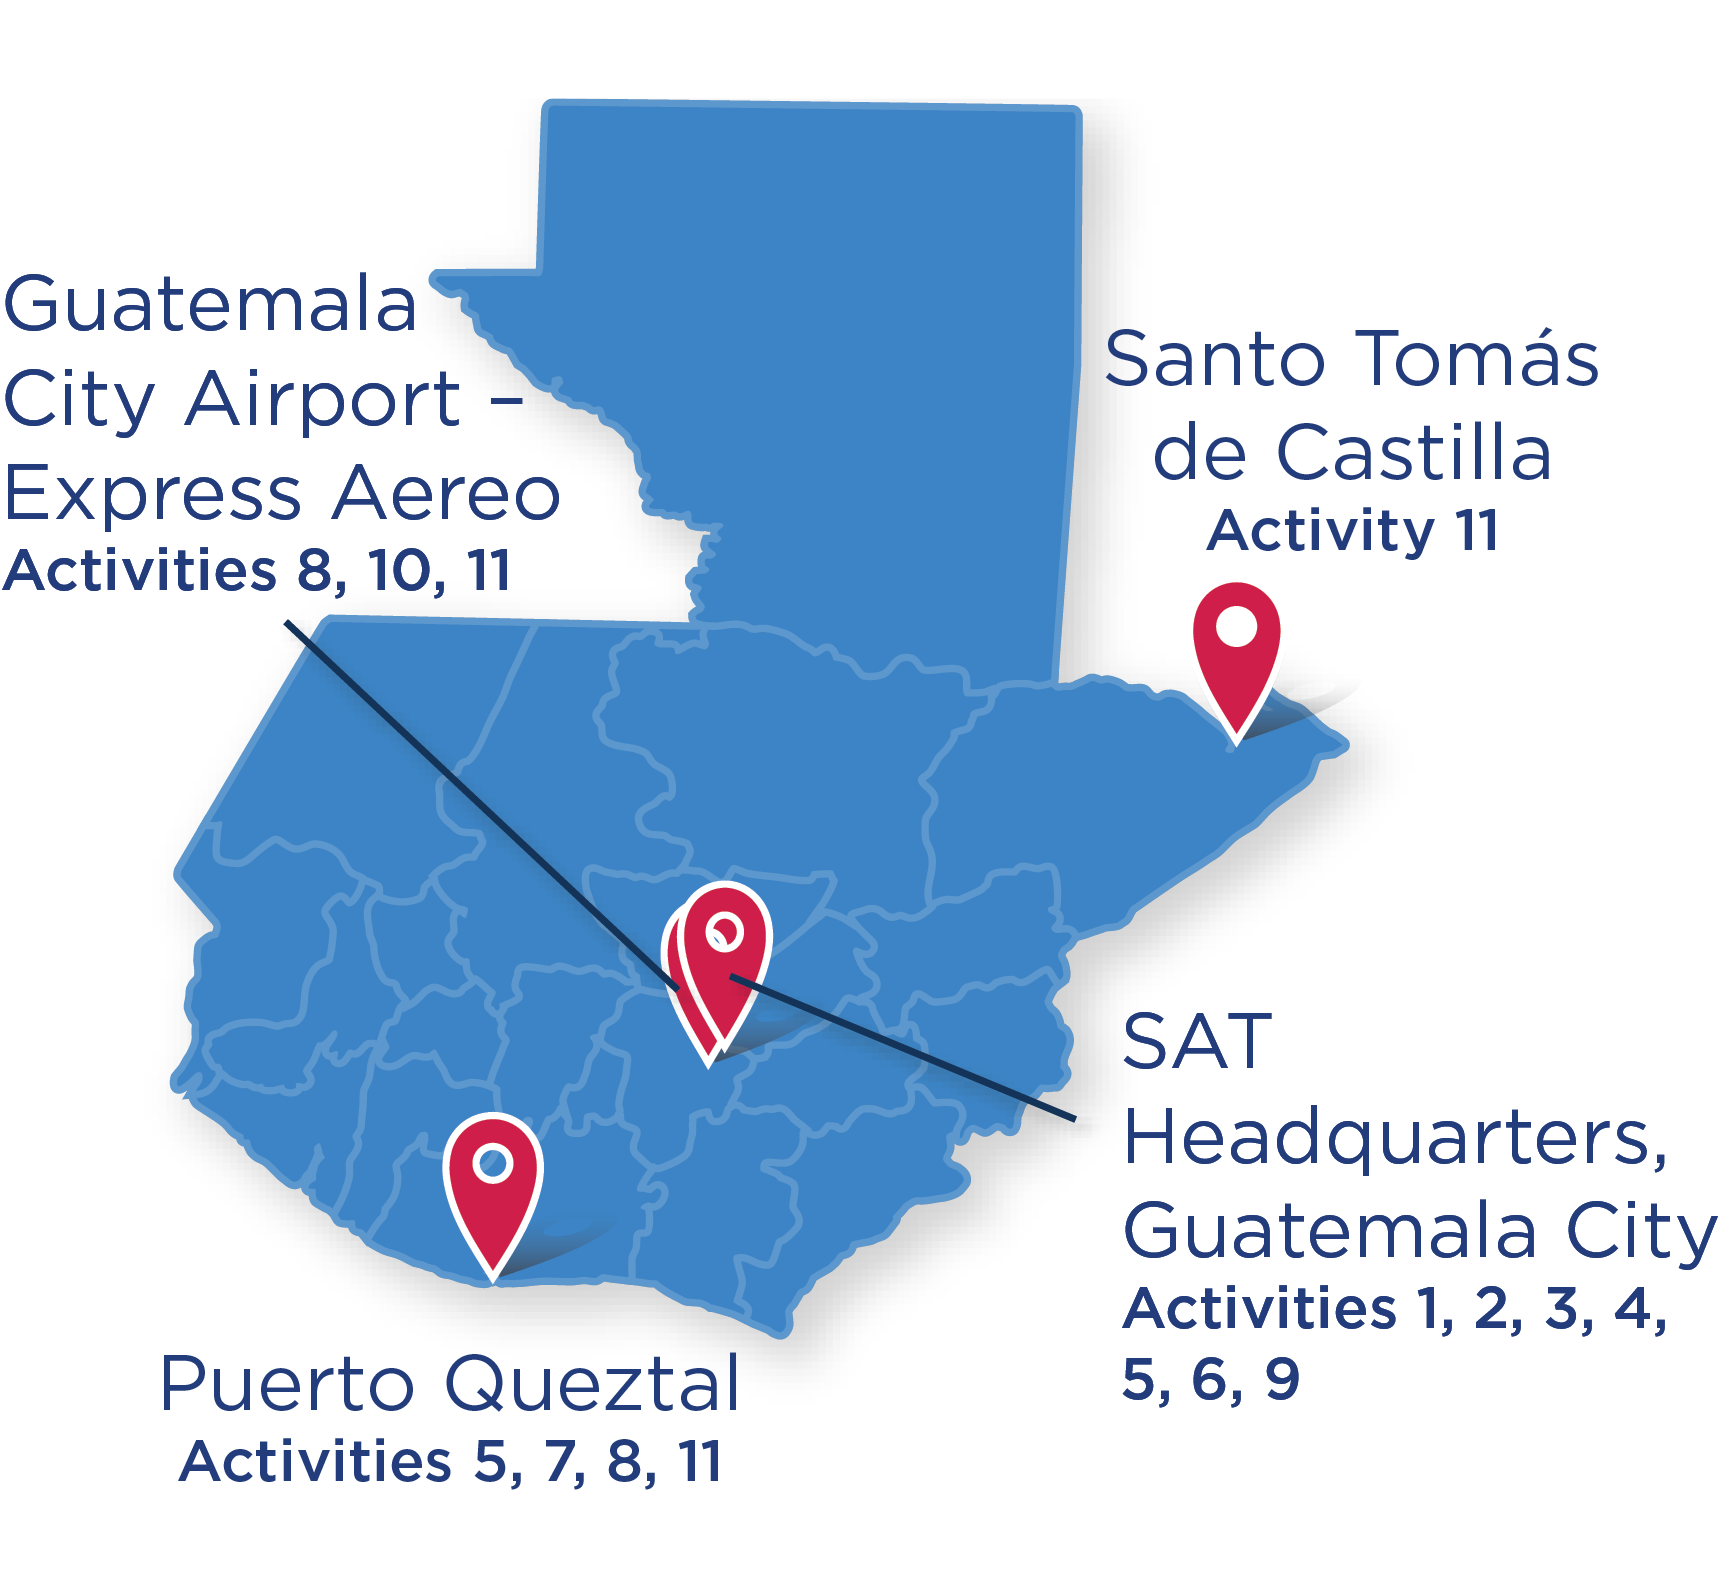 La cobertura del proyecto incluyó Santo Tomás da Castilla para la Actividad 11;  Aeropuerto de la Ciudad de Guatemala, Express Aereo para la Actividad 12;  y Puerto Queztal para las Actividades 5, 7, 8 y 11. 